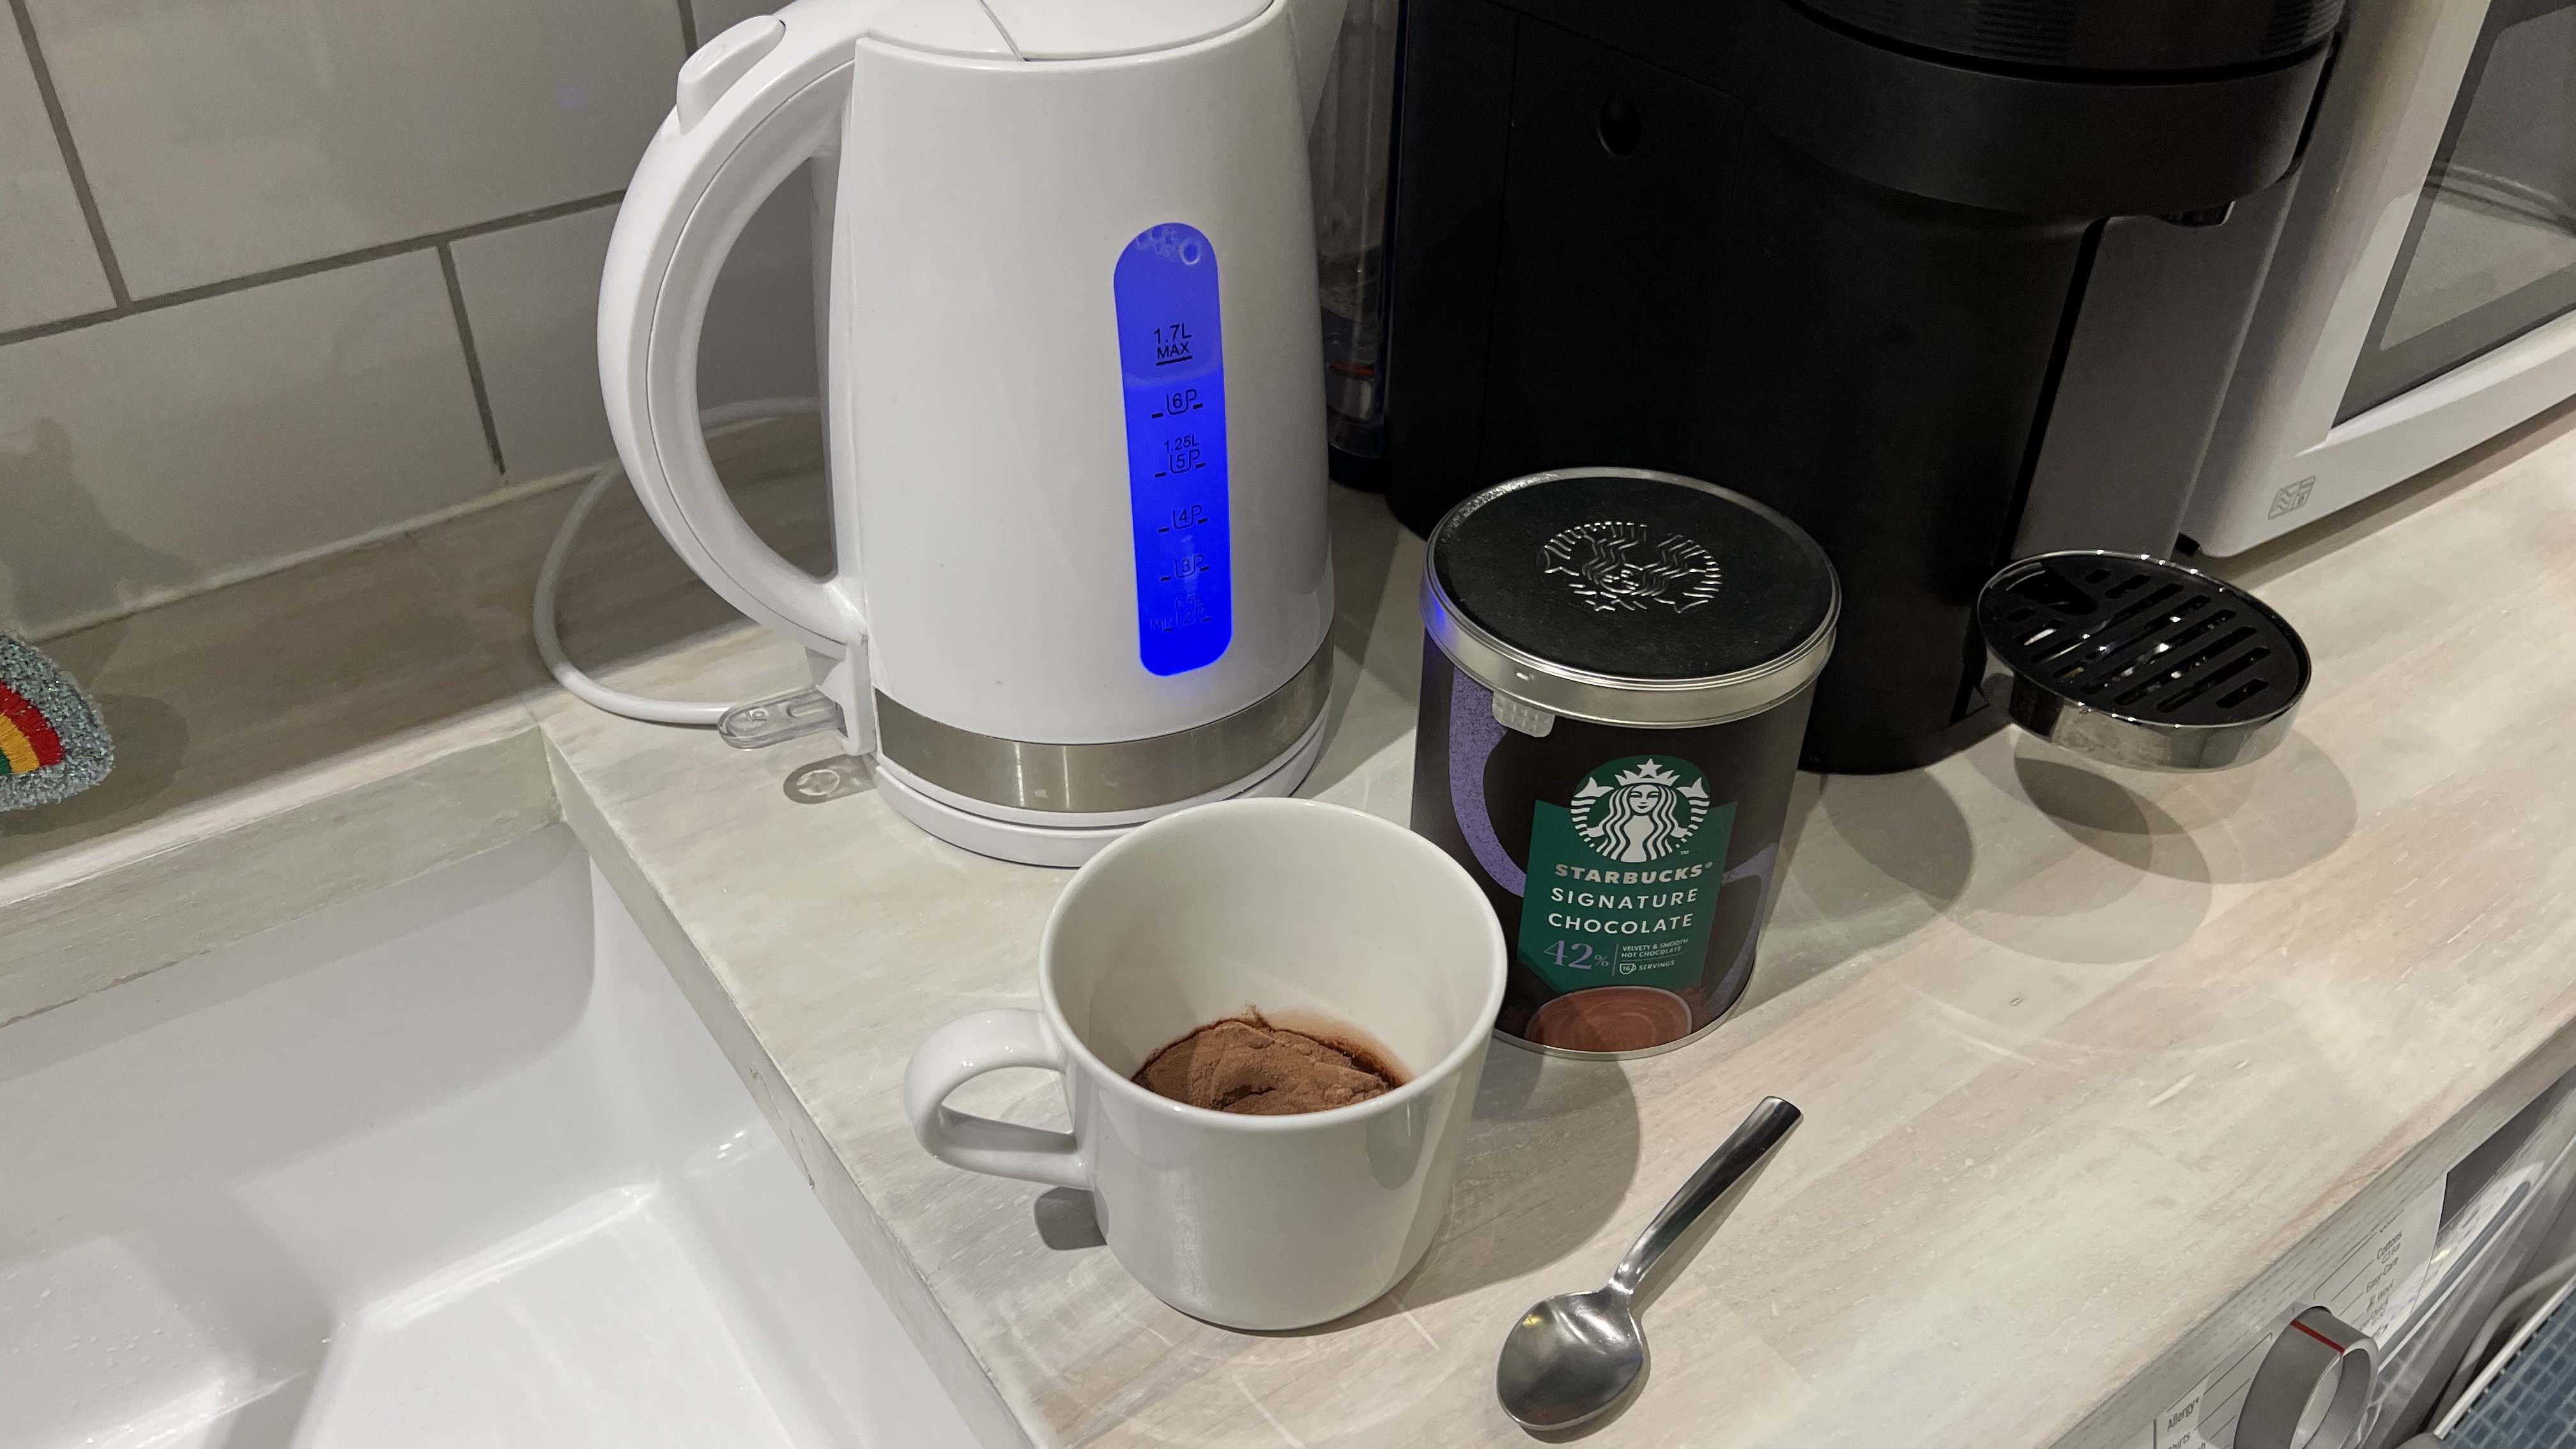 How to make Nespresso hot chocolate | Top Ten Reviews